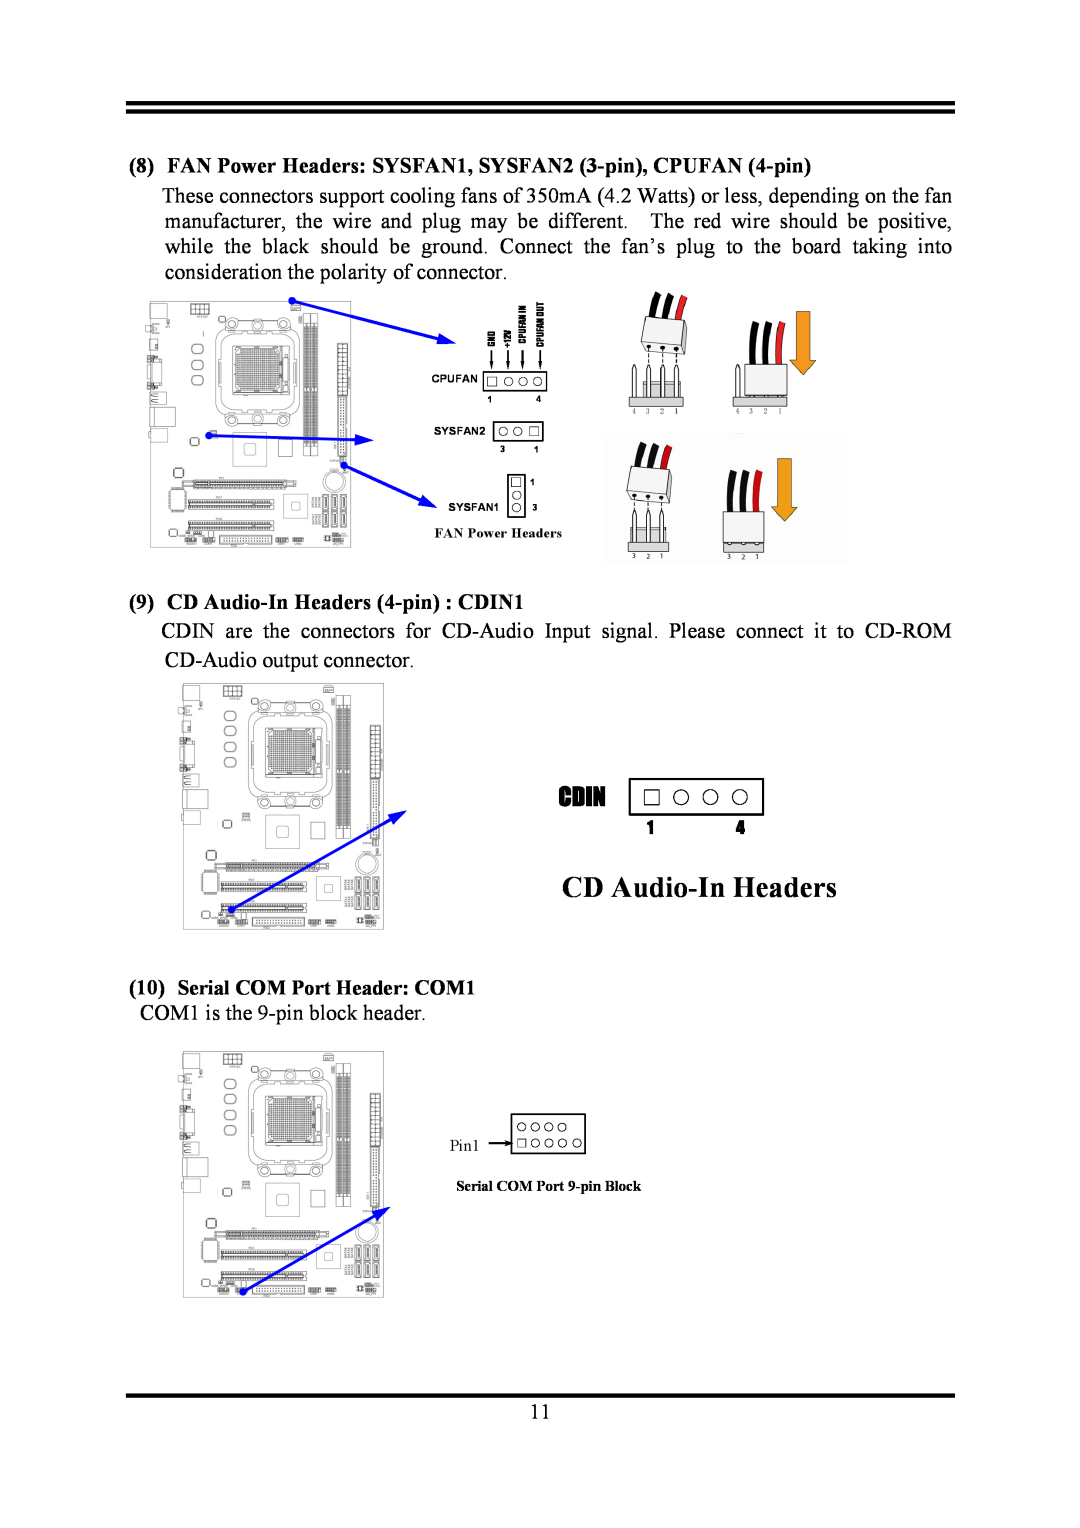 AMD KM780V user manual FAN Power Headers SYSFAN1, SYSFAN2 3-pin, CPUFAN 4-pin, CD Audio-In Headers 4-pin CDIN1, Cdin 